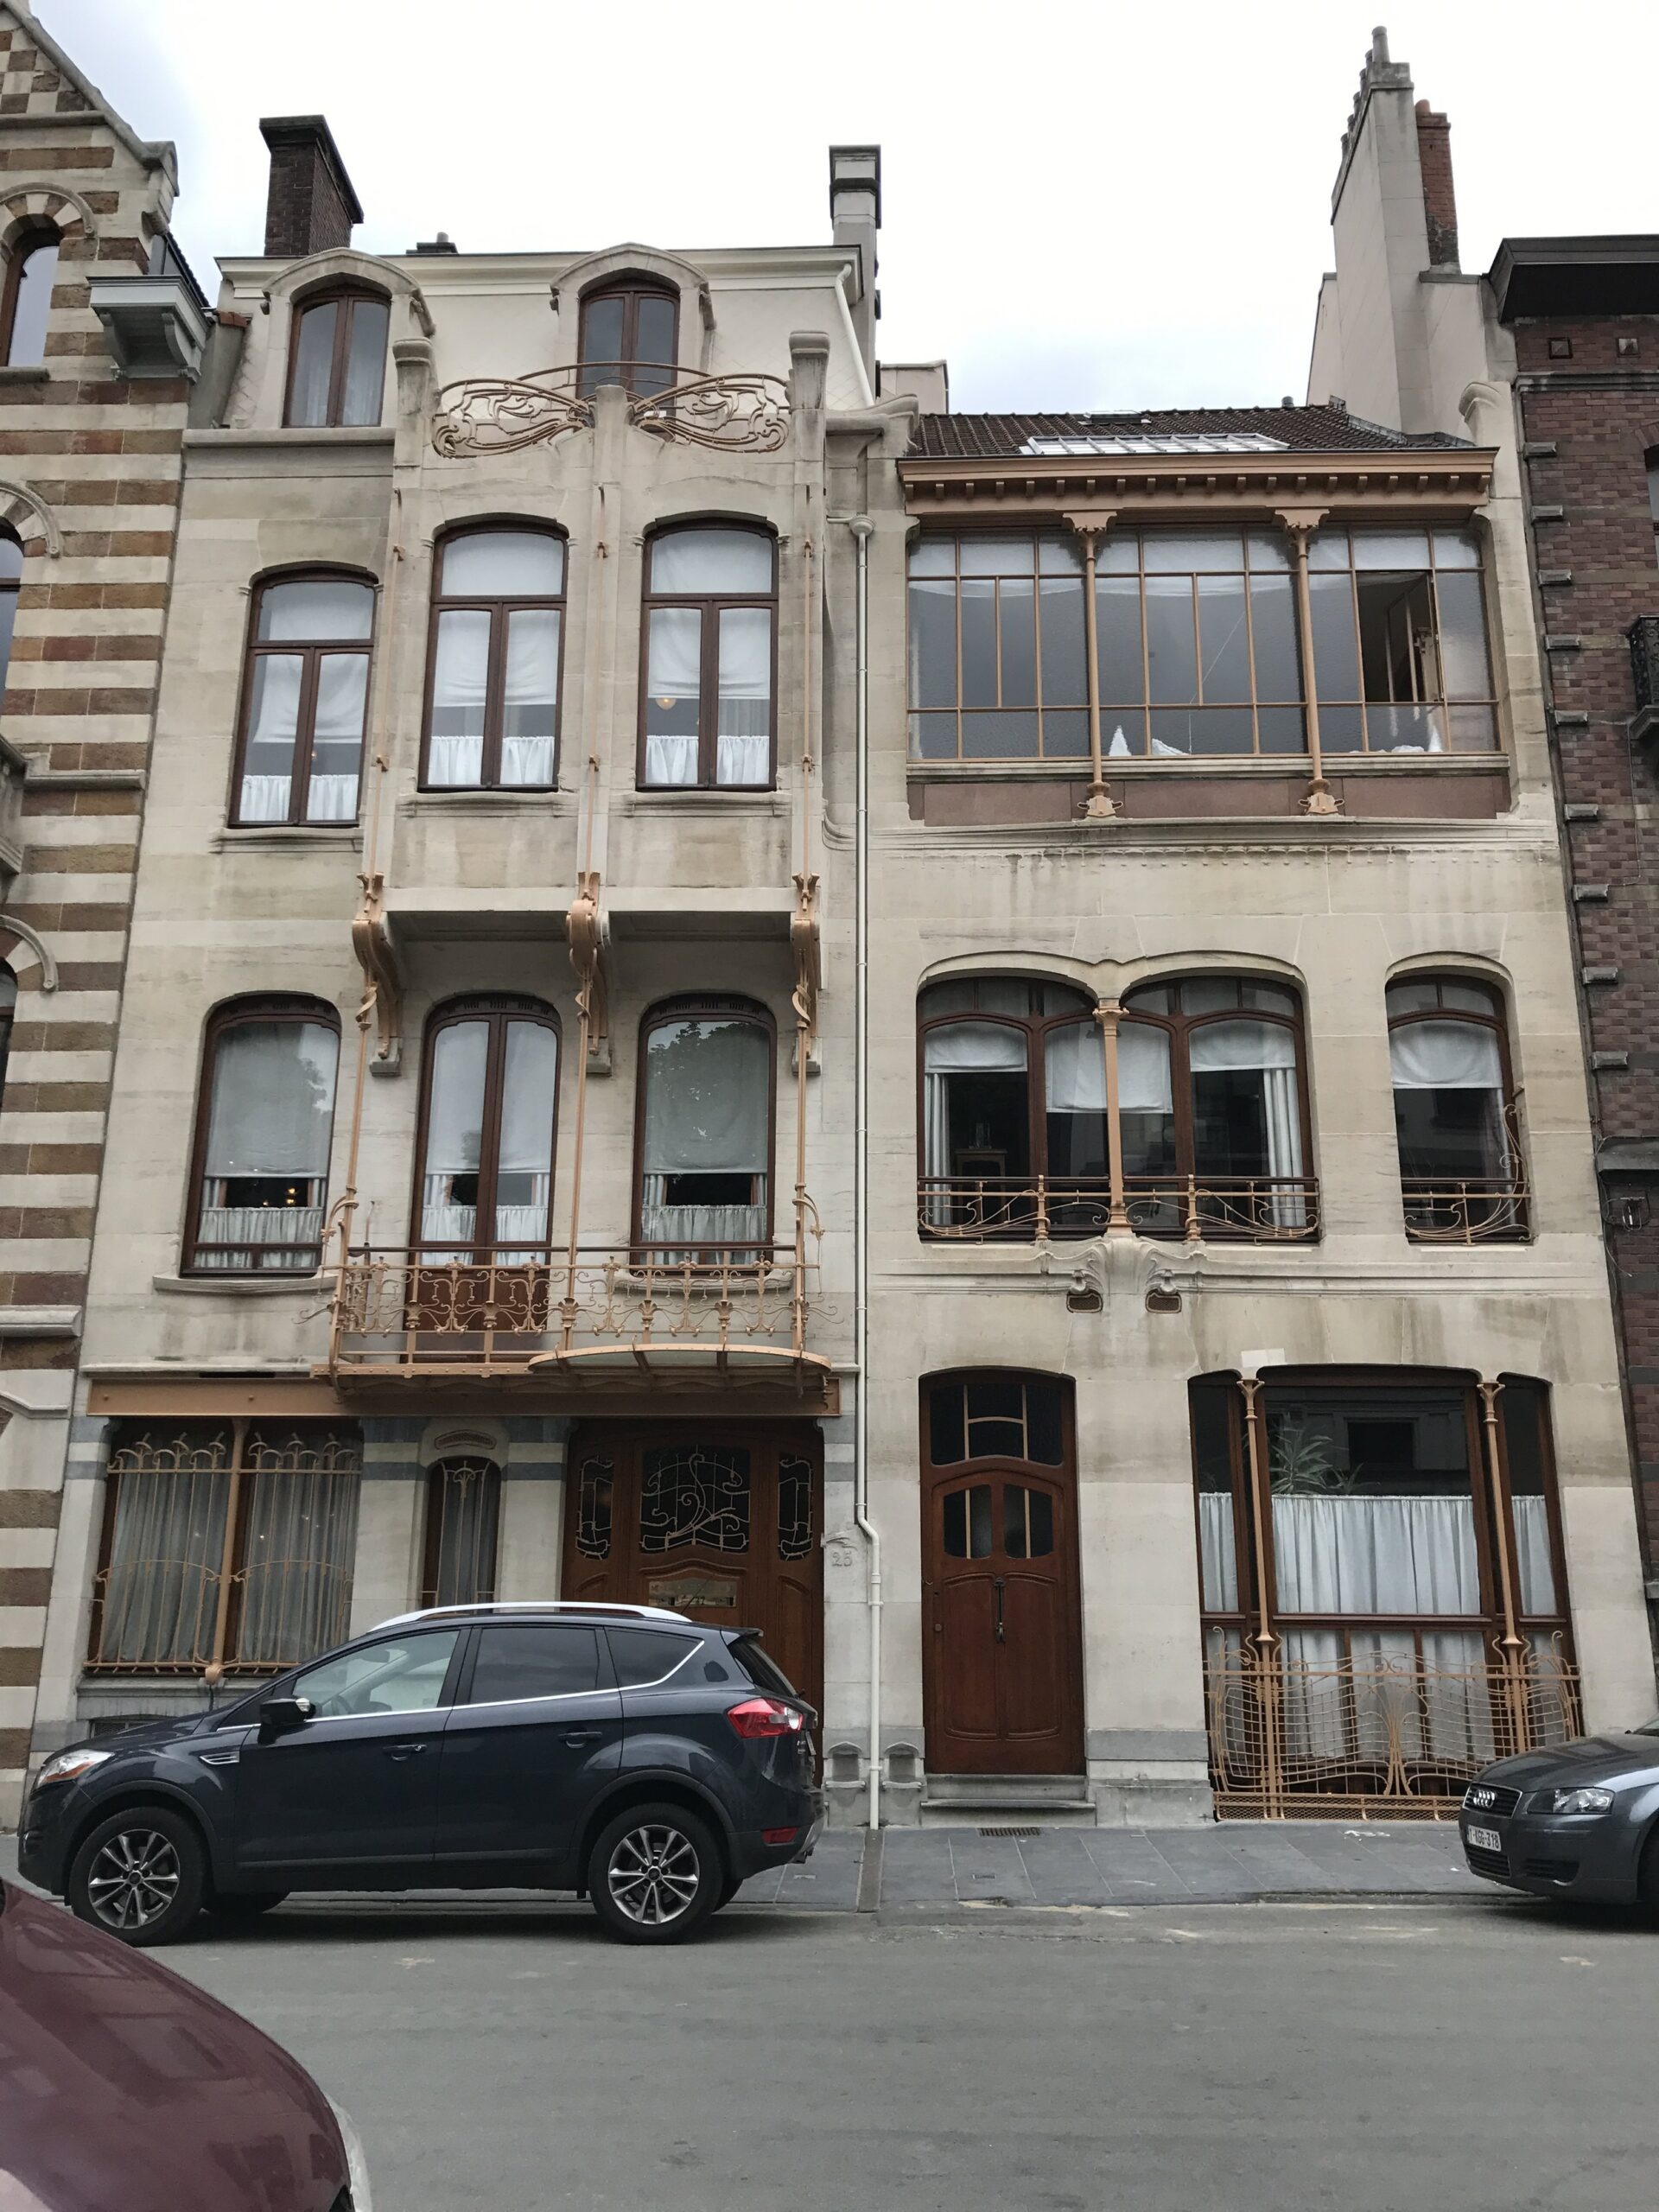 Art Nouveau architecture of Brussels